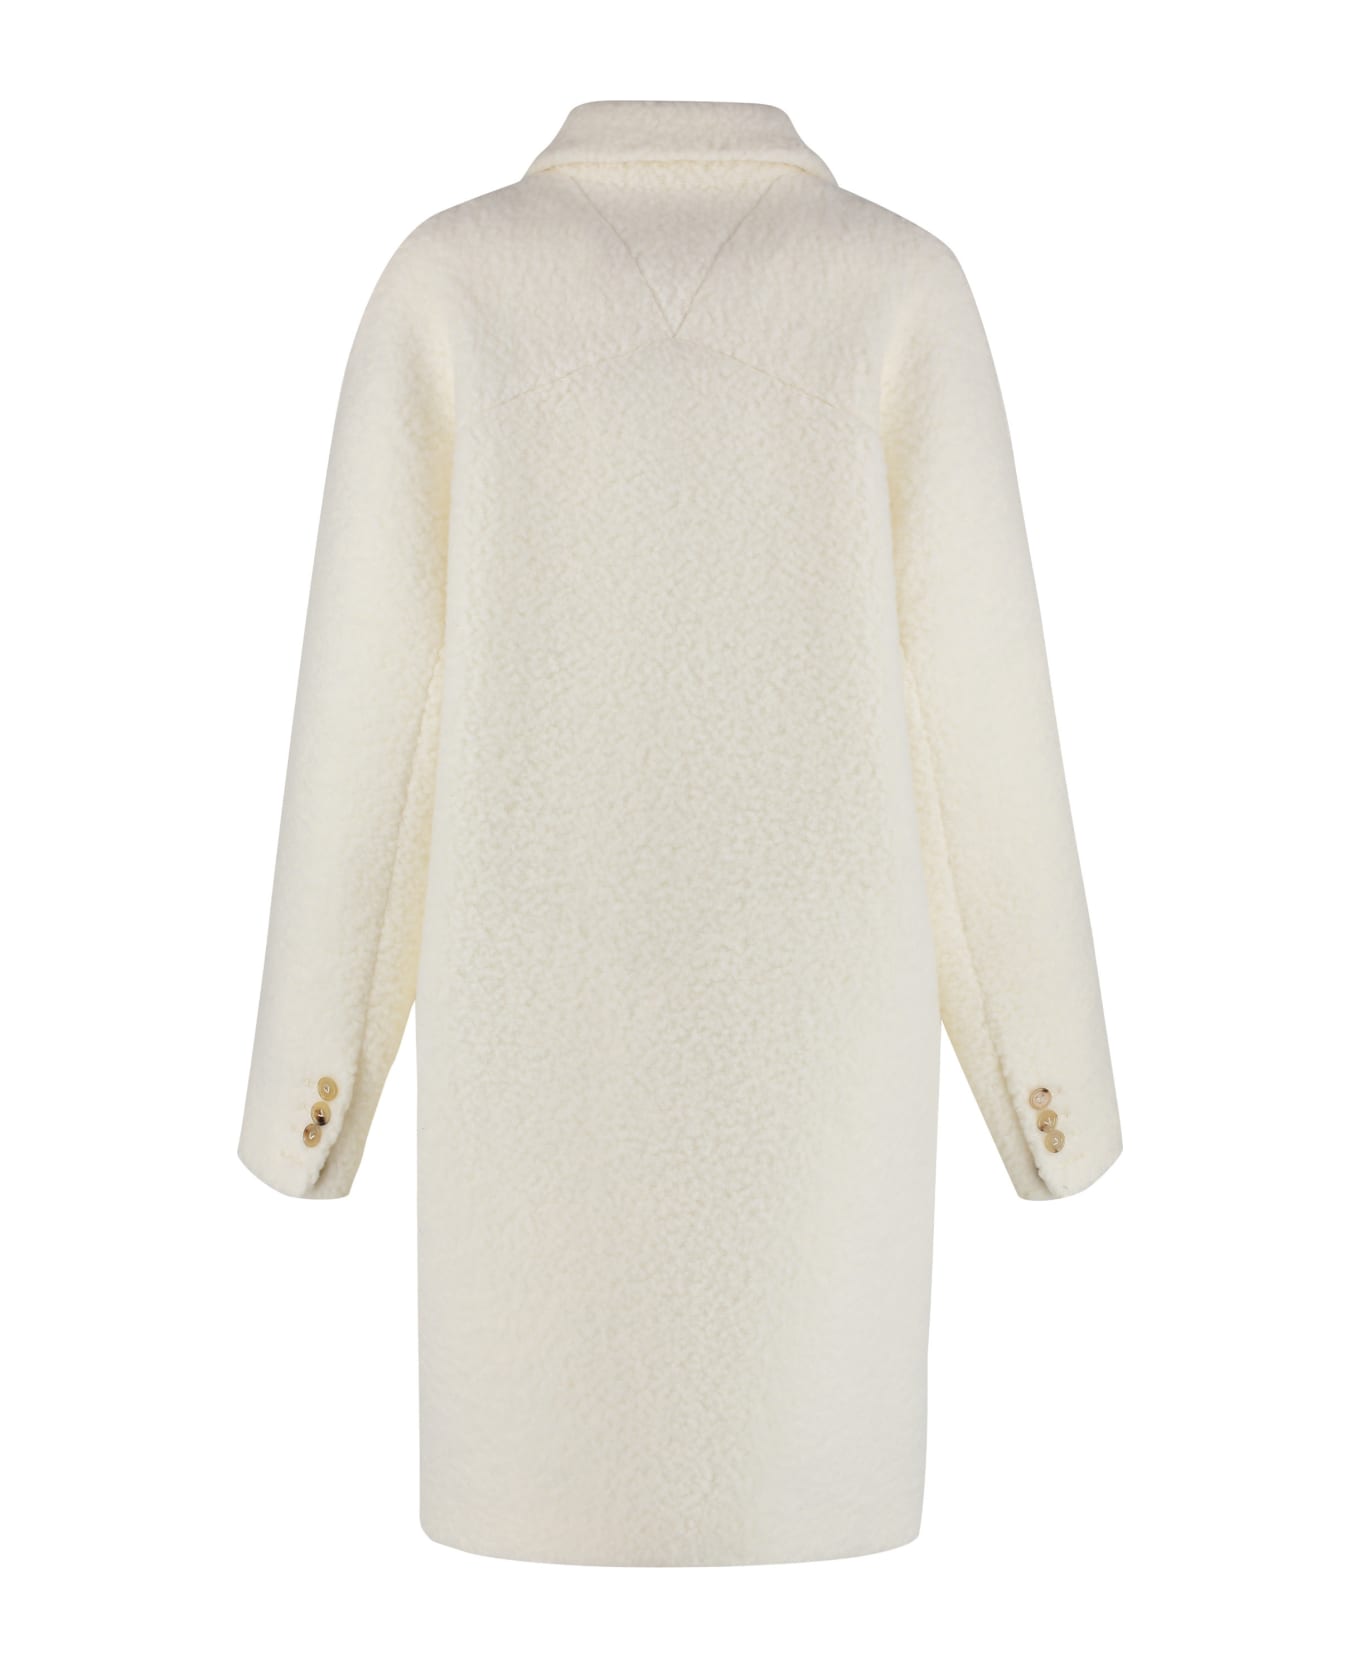 Bottega Veneta Wool Coat - White コート